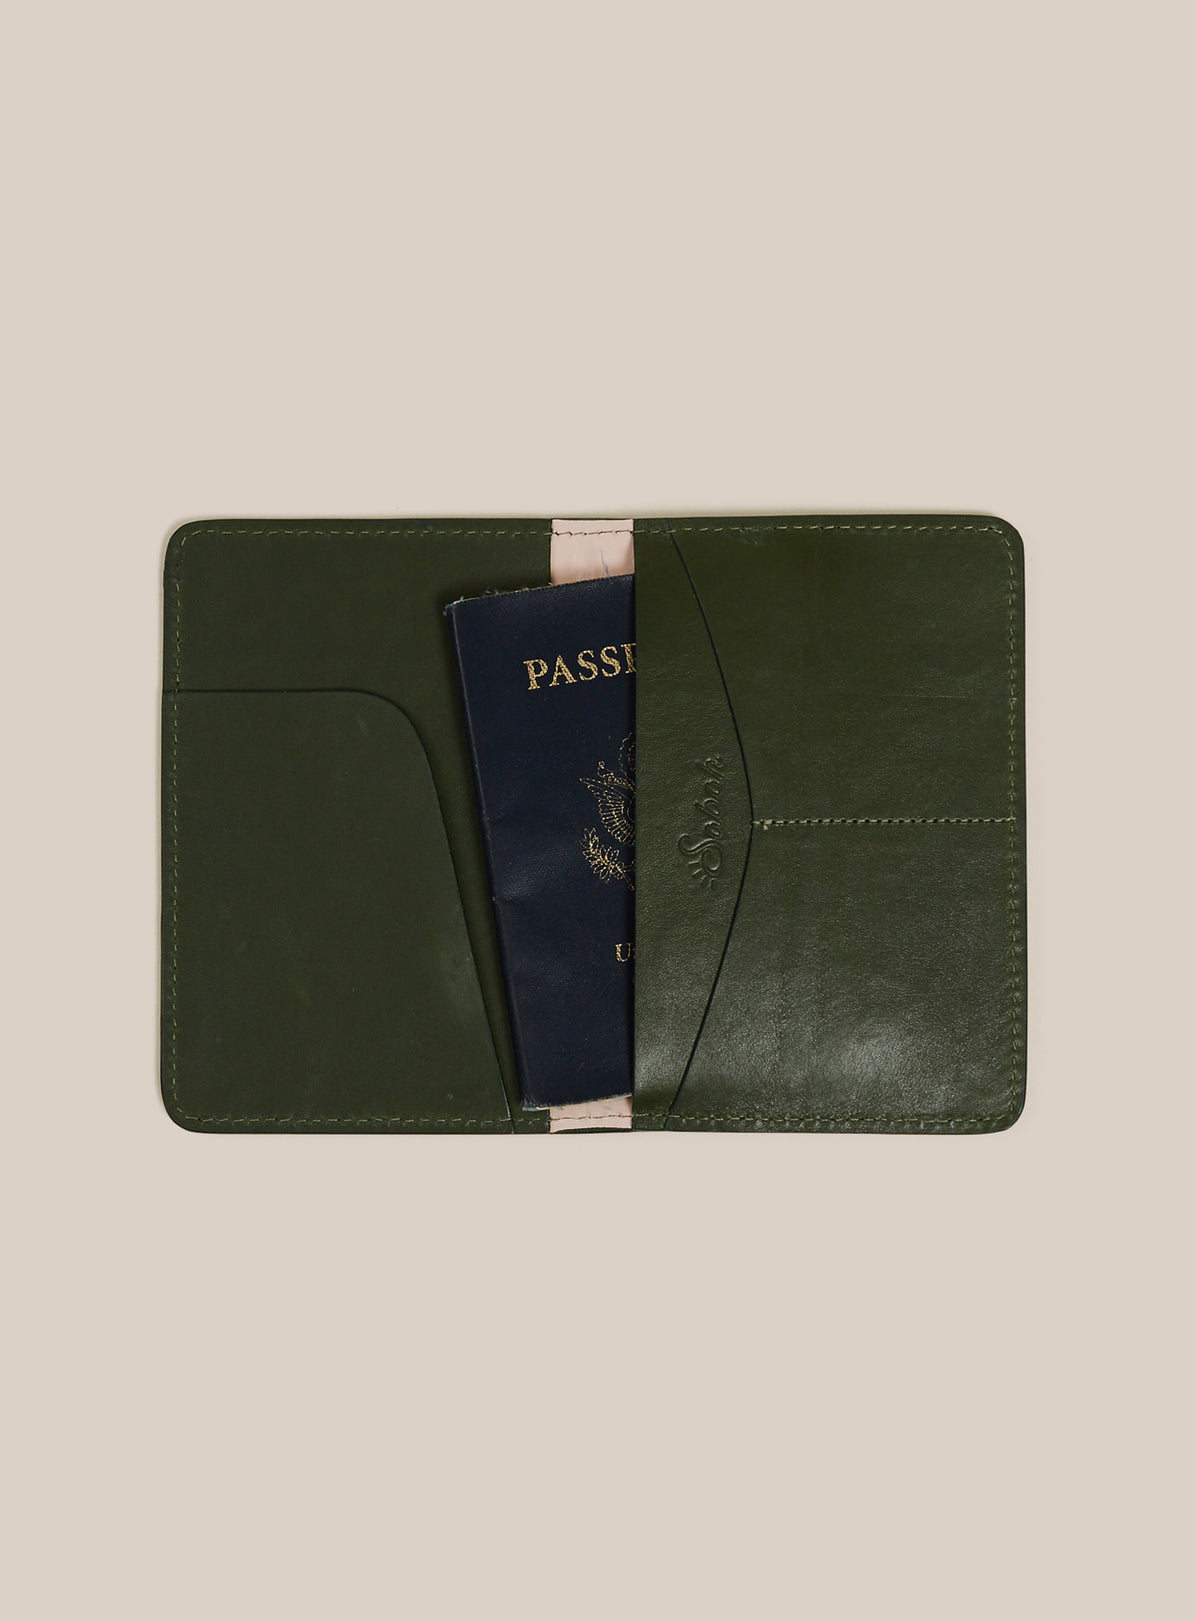 Passport Holder - Denali Green